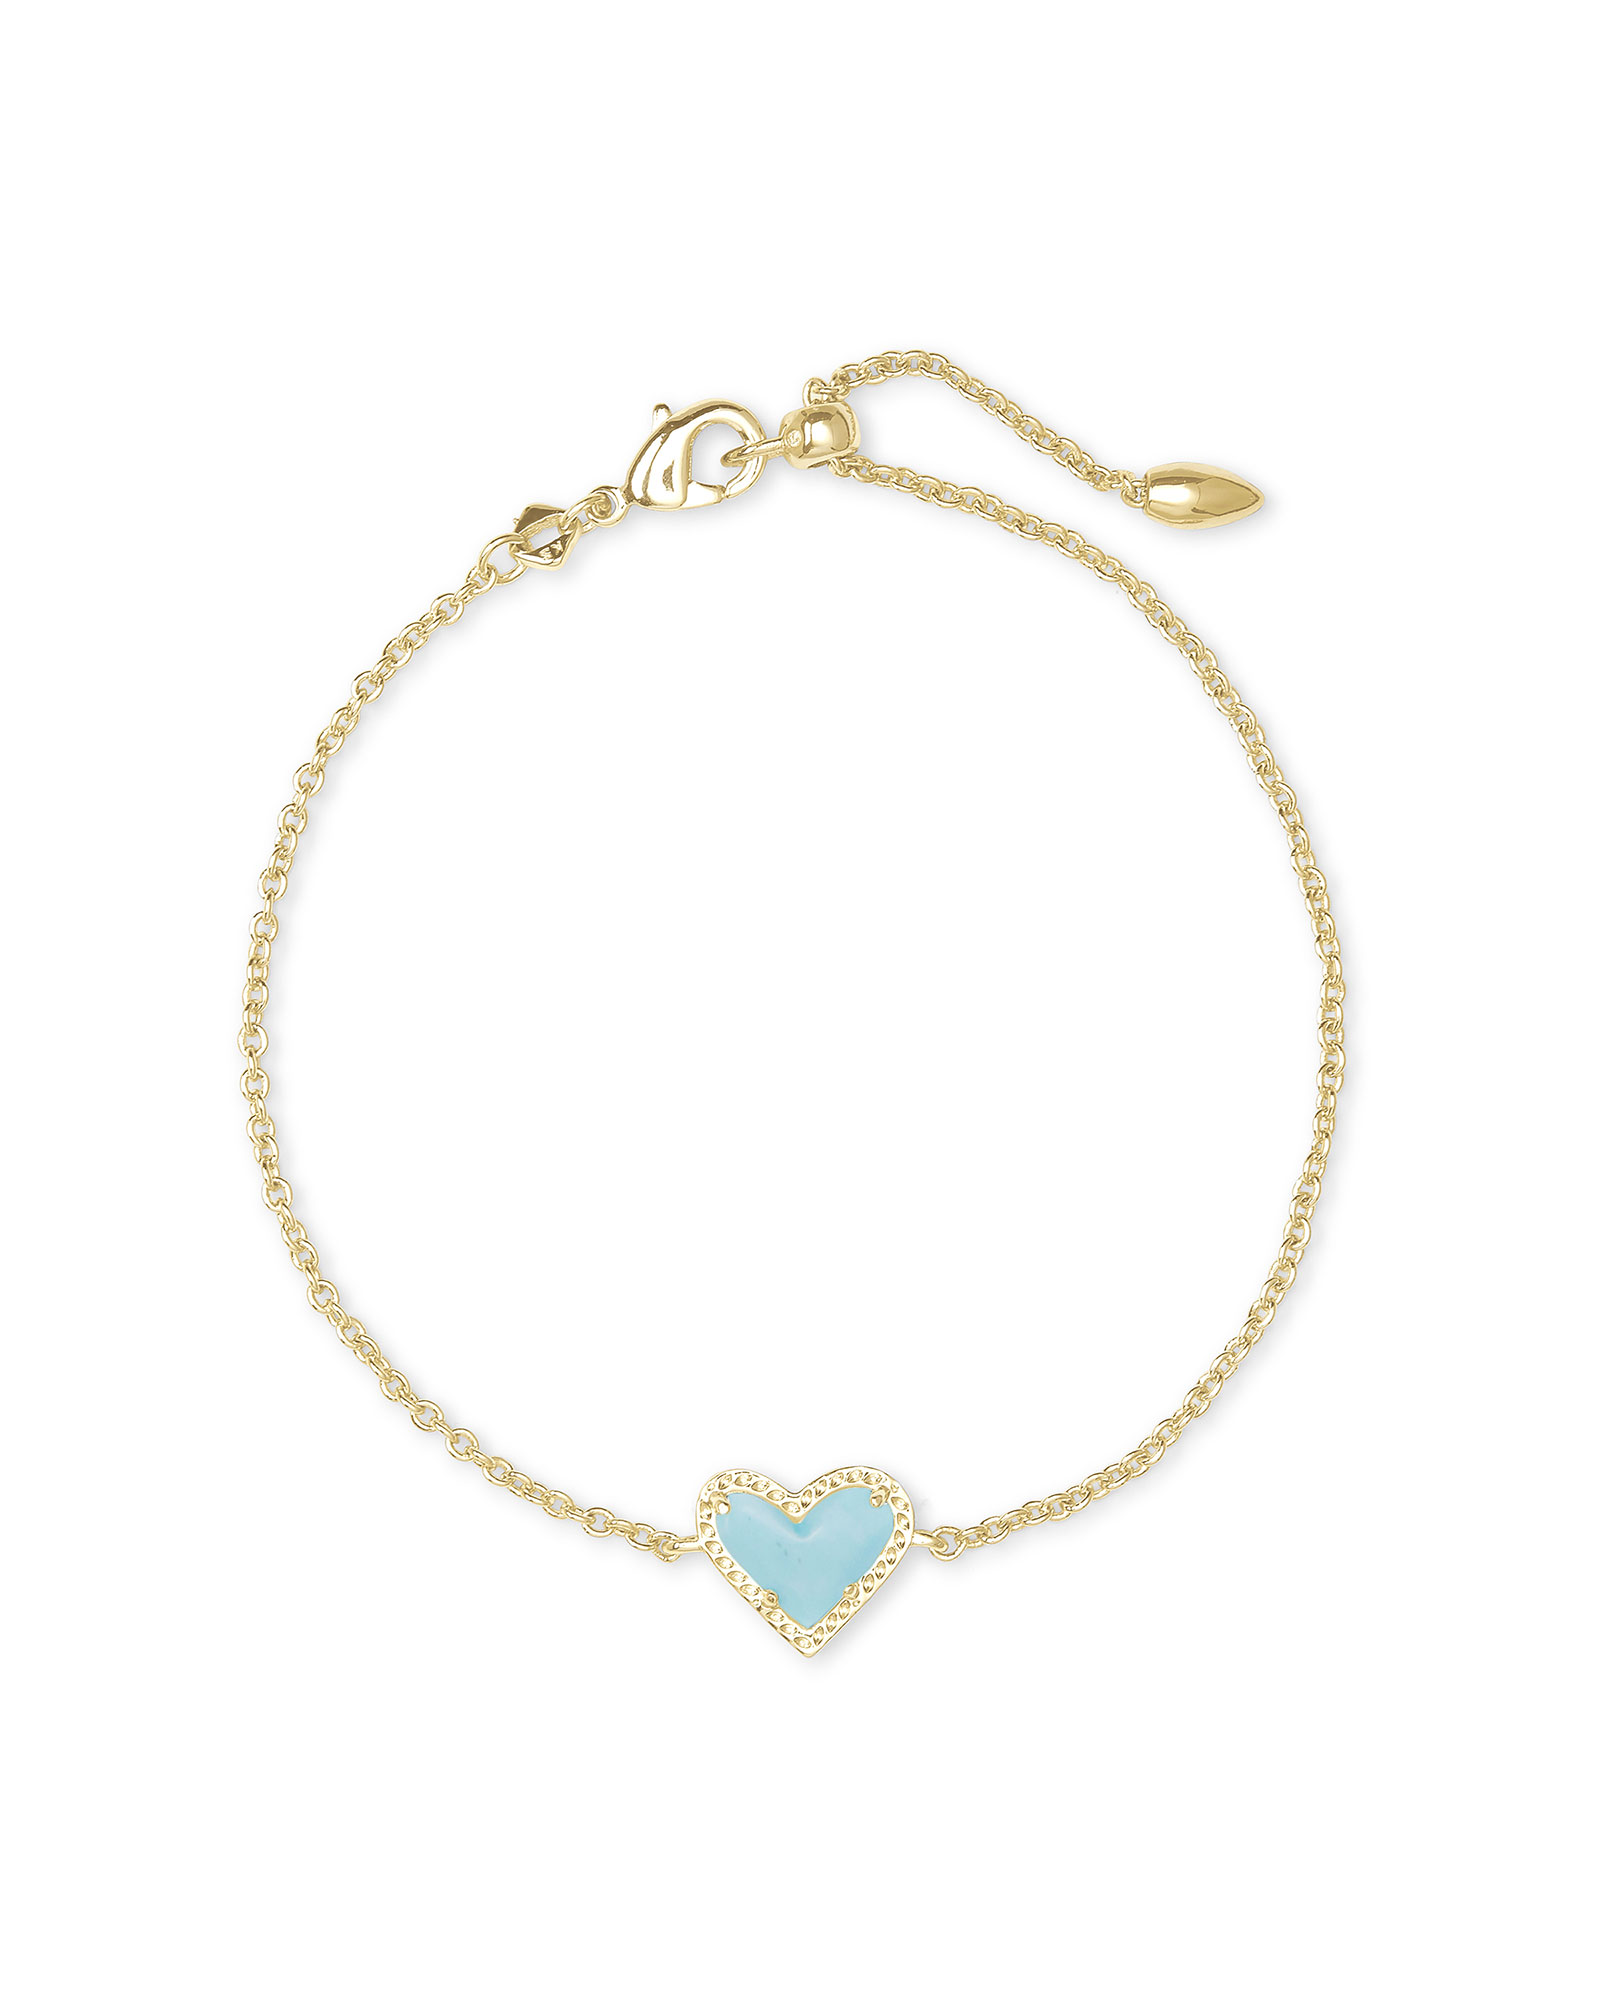 Ari Heart Gold Chain Bracelet in Light Blue Magnesite | Kendra Scott